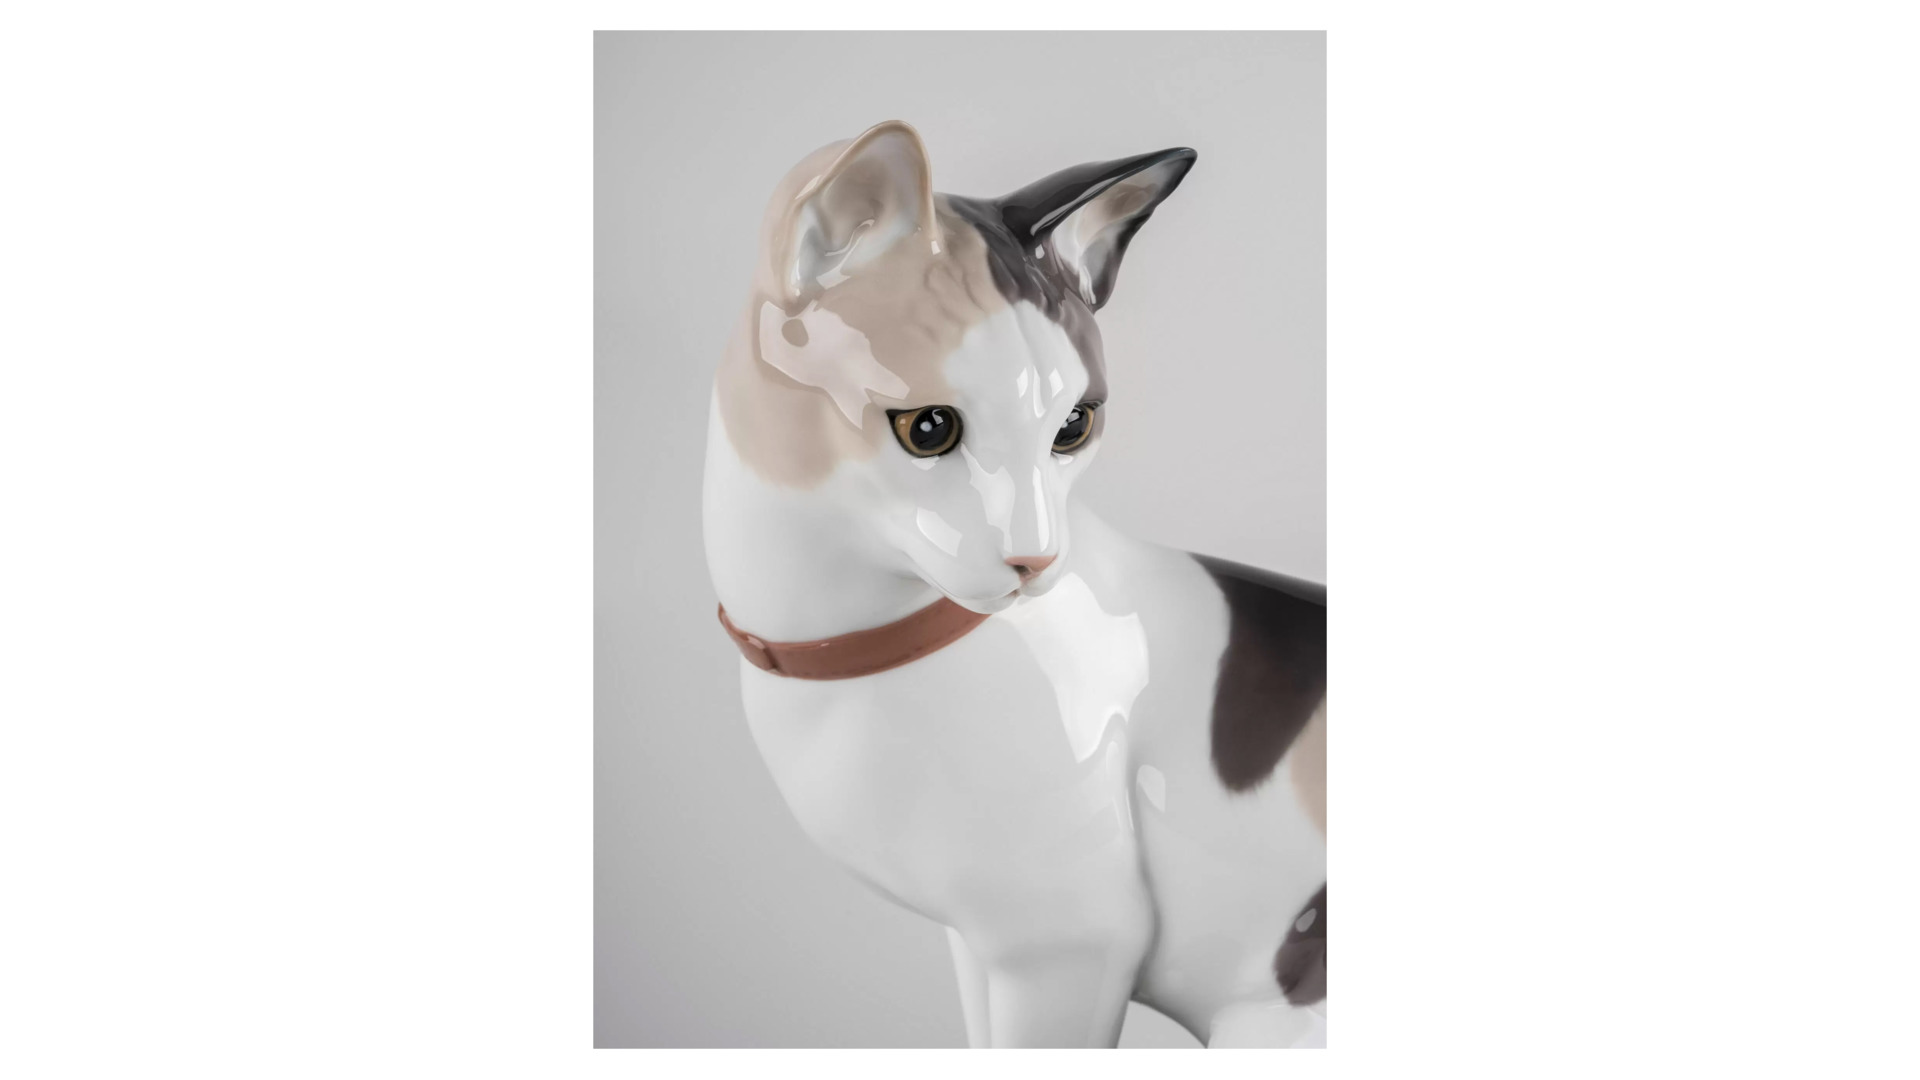 Фигурка Lladro Кошки - мышки 33х22 см, фарфор